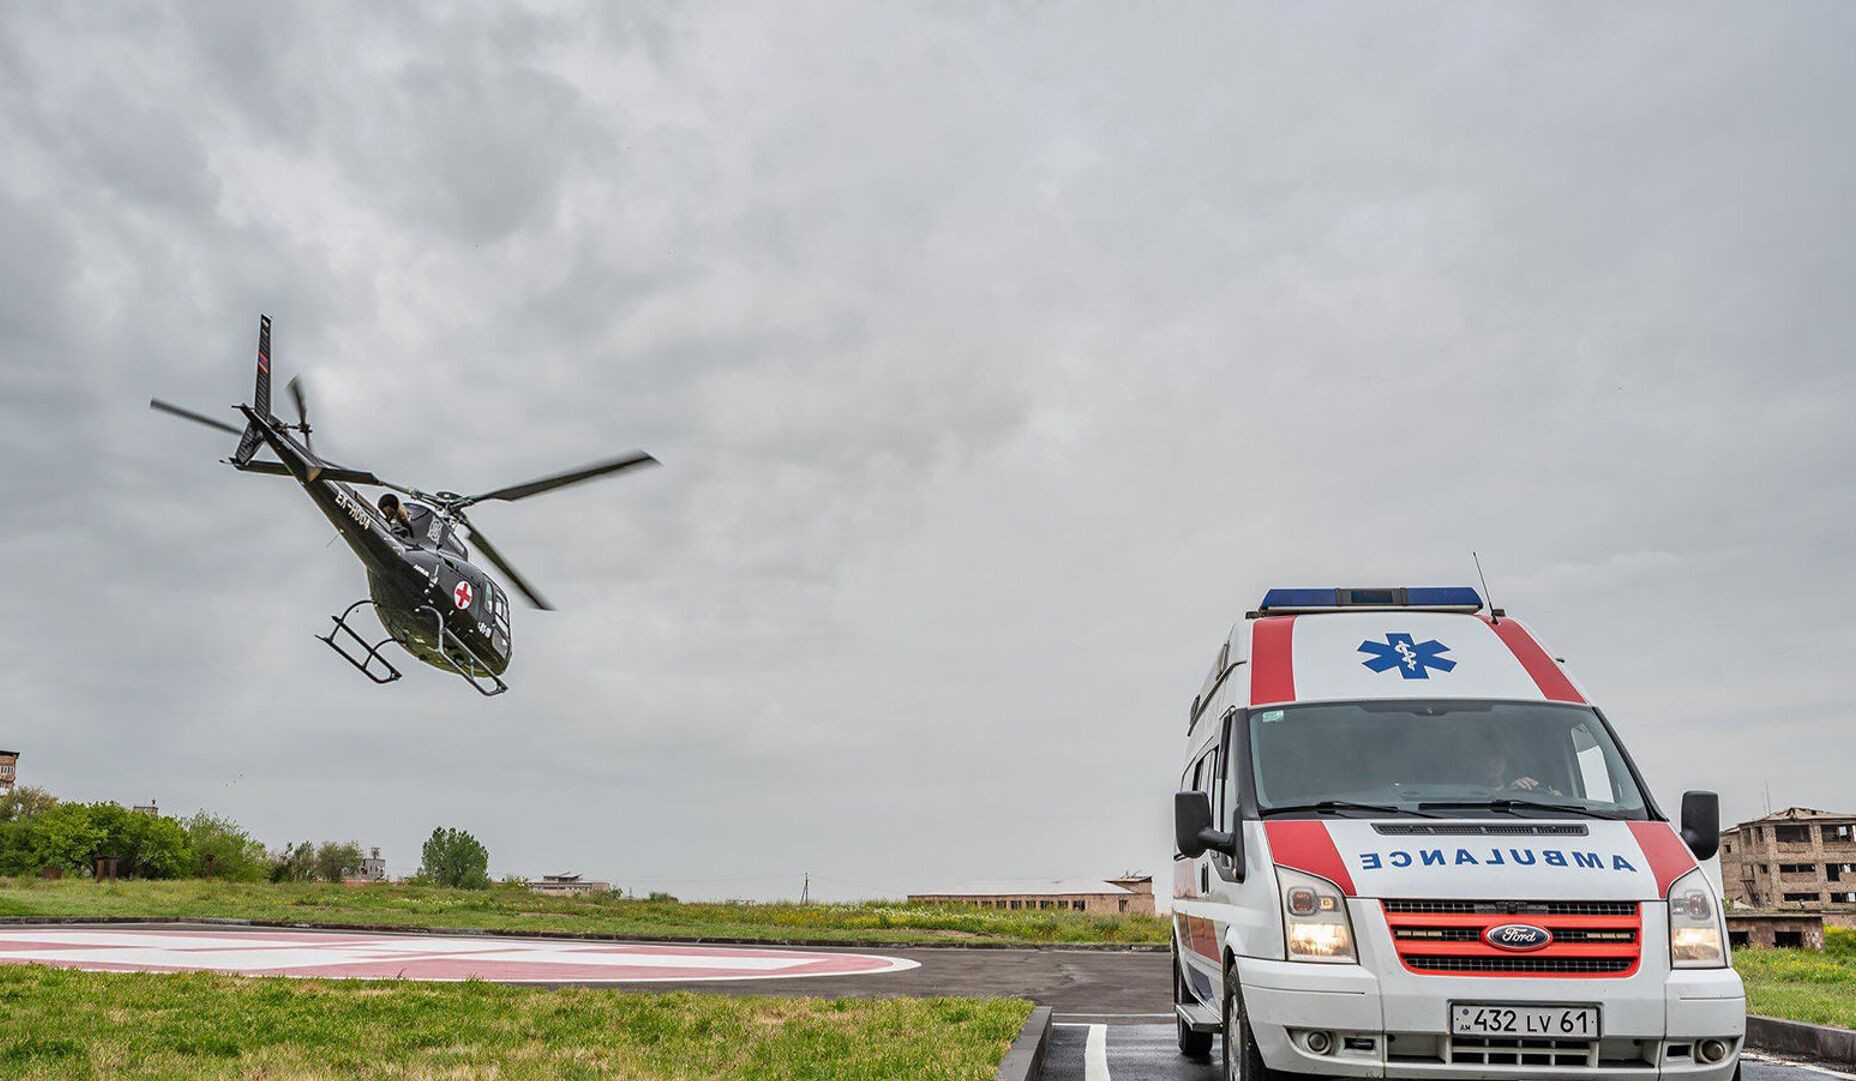 Бригада врачей на вертолете вылетела в Степанакерт, чтобы оказать помощь нашим соотечественникам, пострадавшим в результате взрыва: Министерство здравоохранения РА